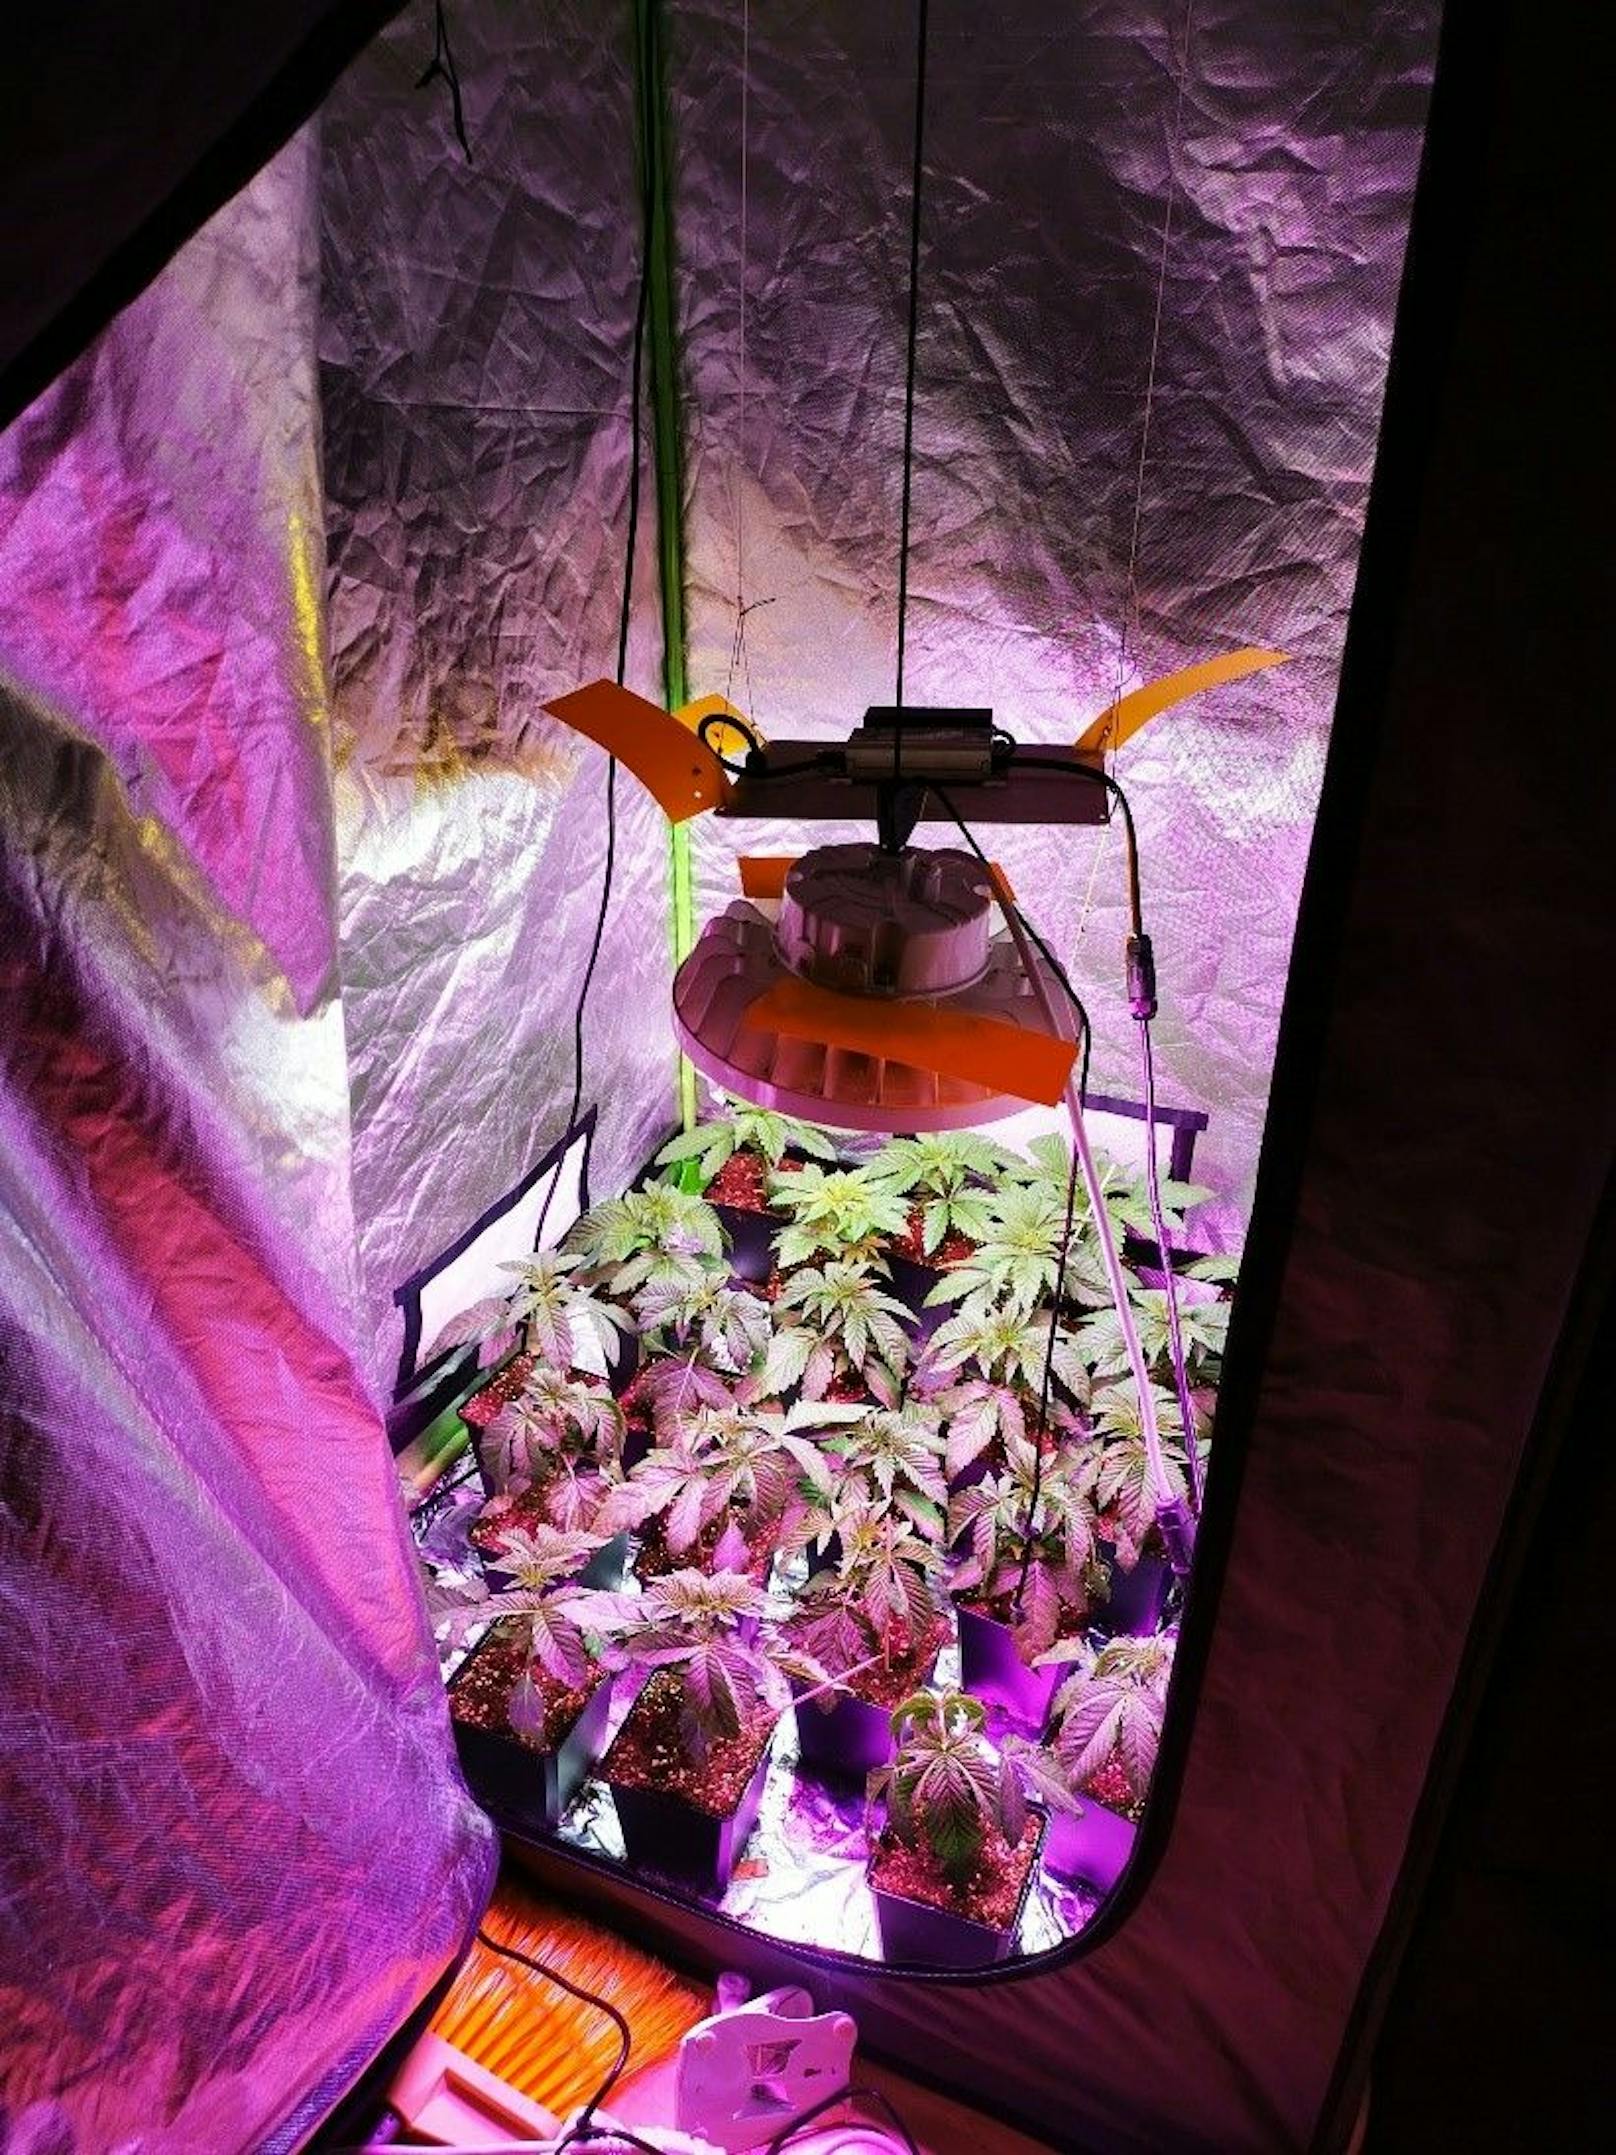 In der Wohnung wurden in zwei "Grow-Zelten" mehrere Cannabispflanzen entdeckt.